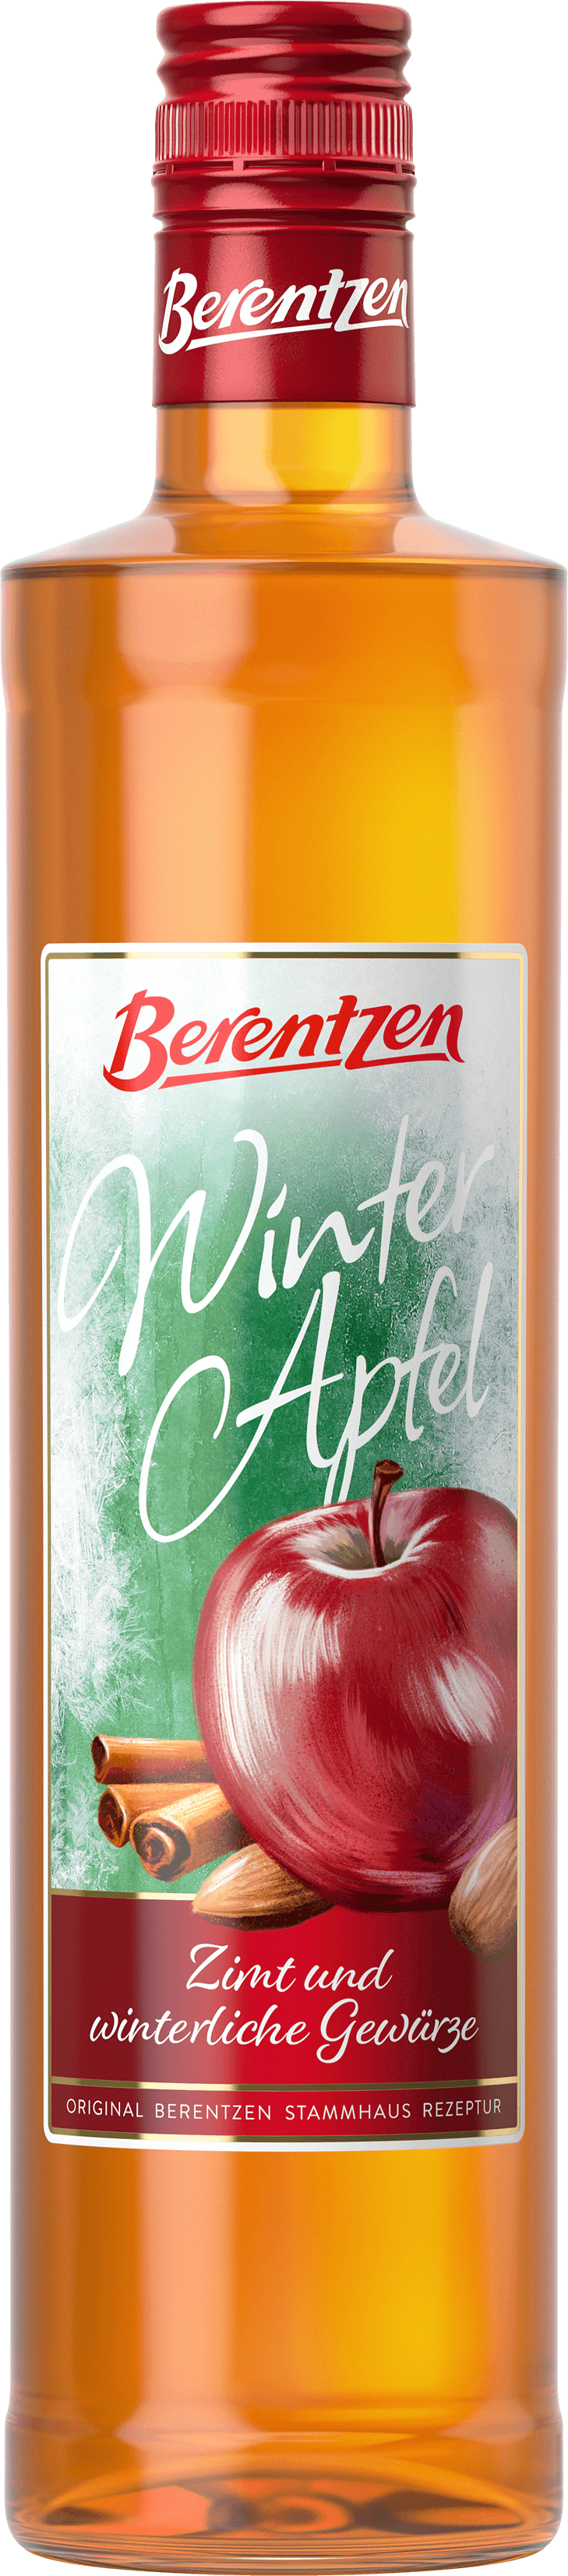 Flaschenabbildung des Berentzen WinterApfel